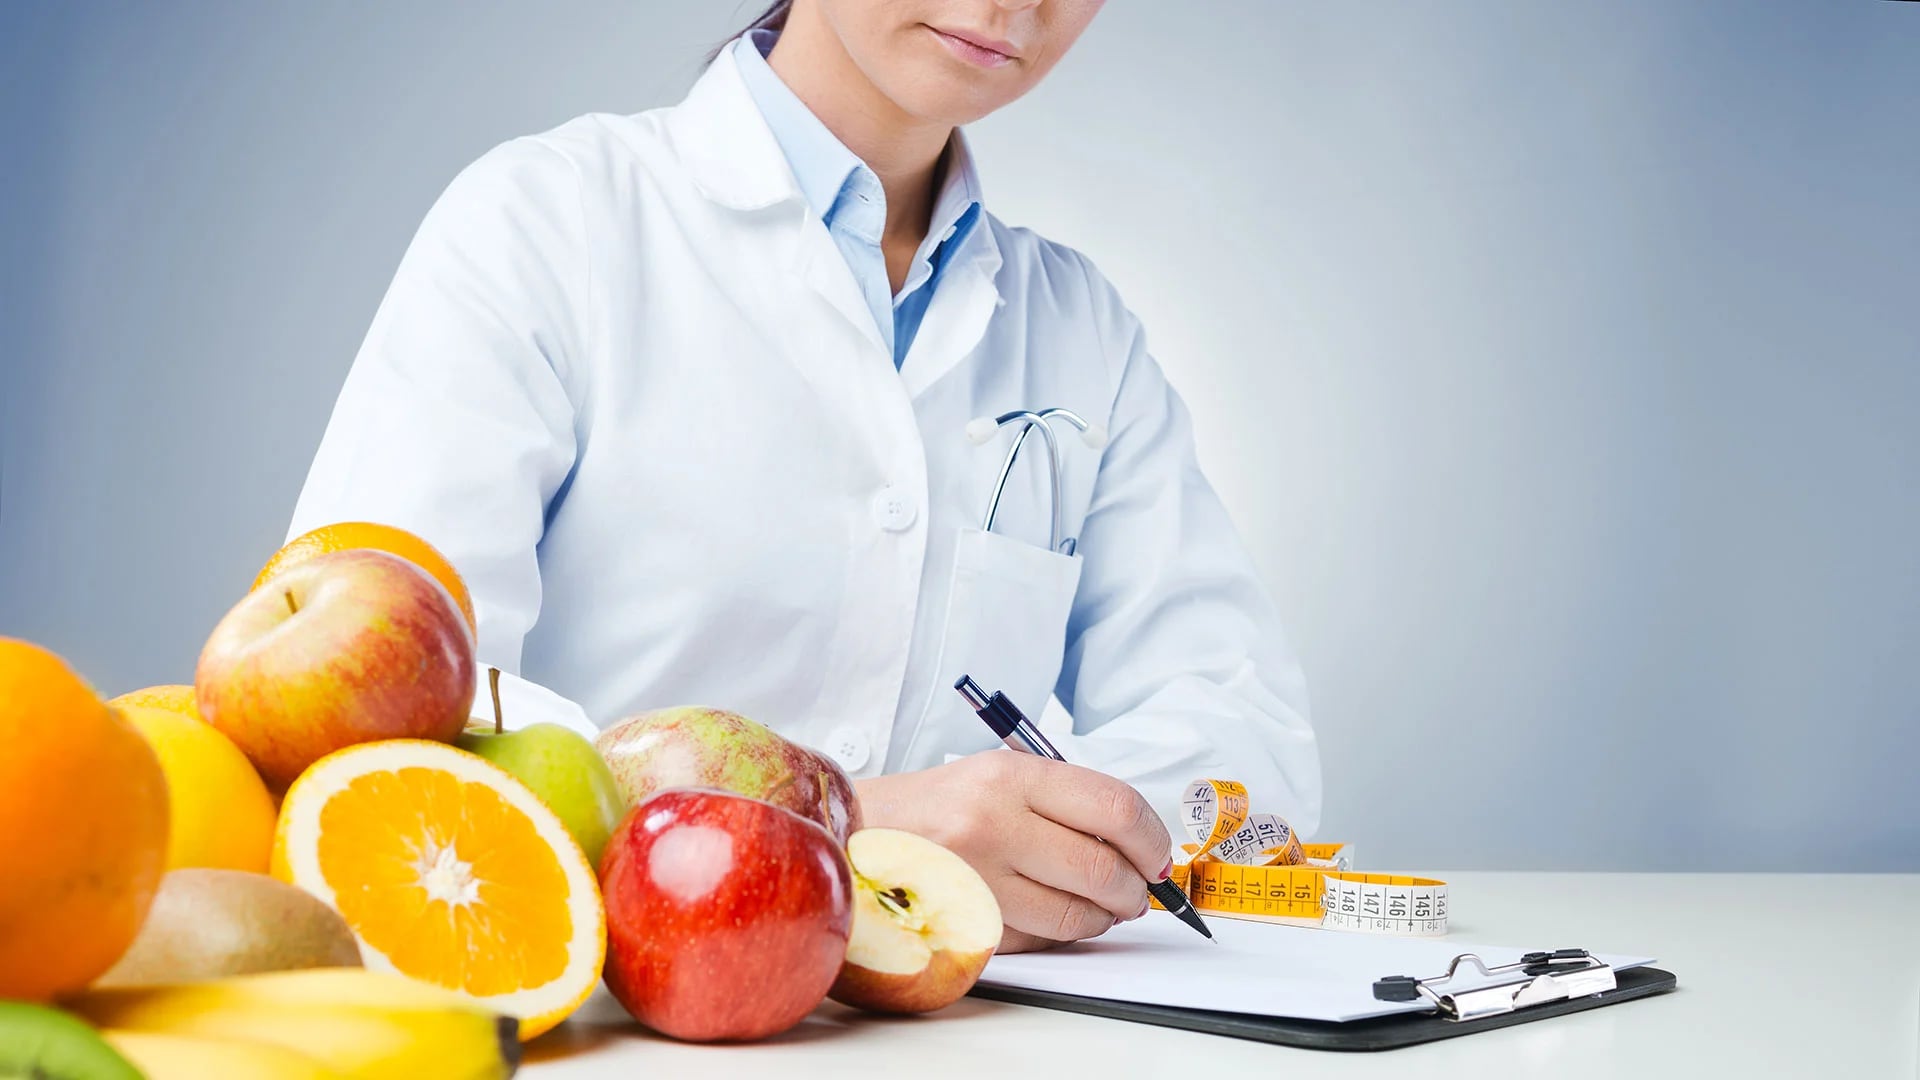 La evaluación del estado nutricional permite detectar alteraciones de la alimentación (iStock)